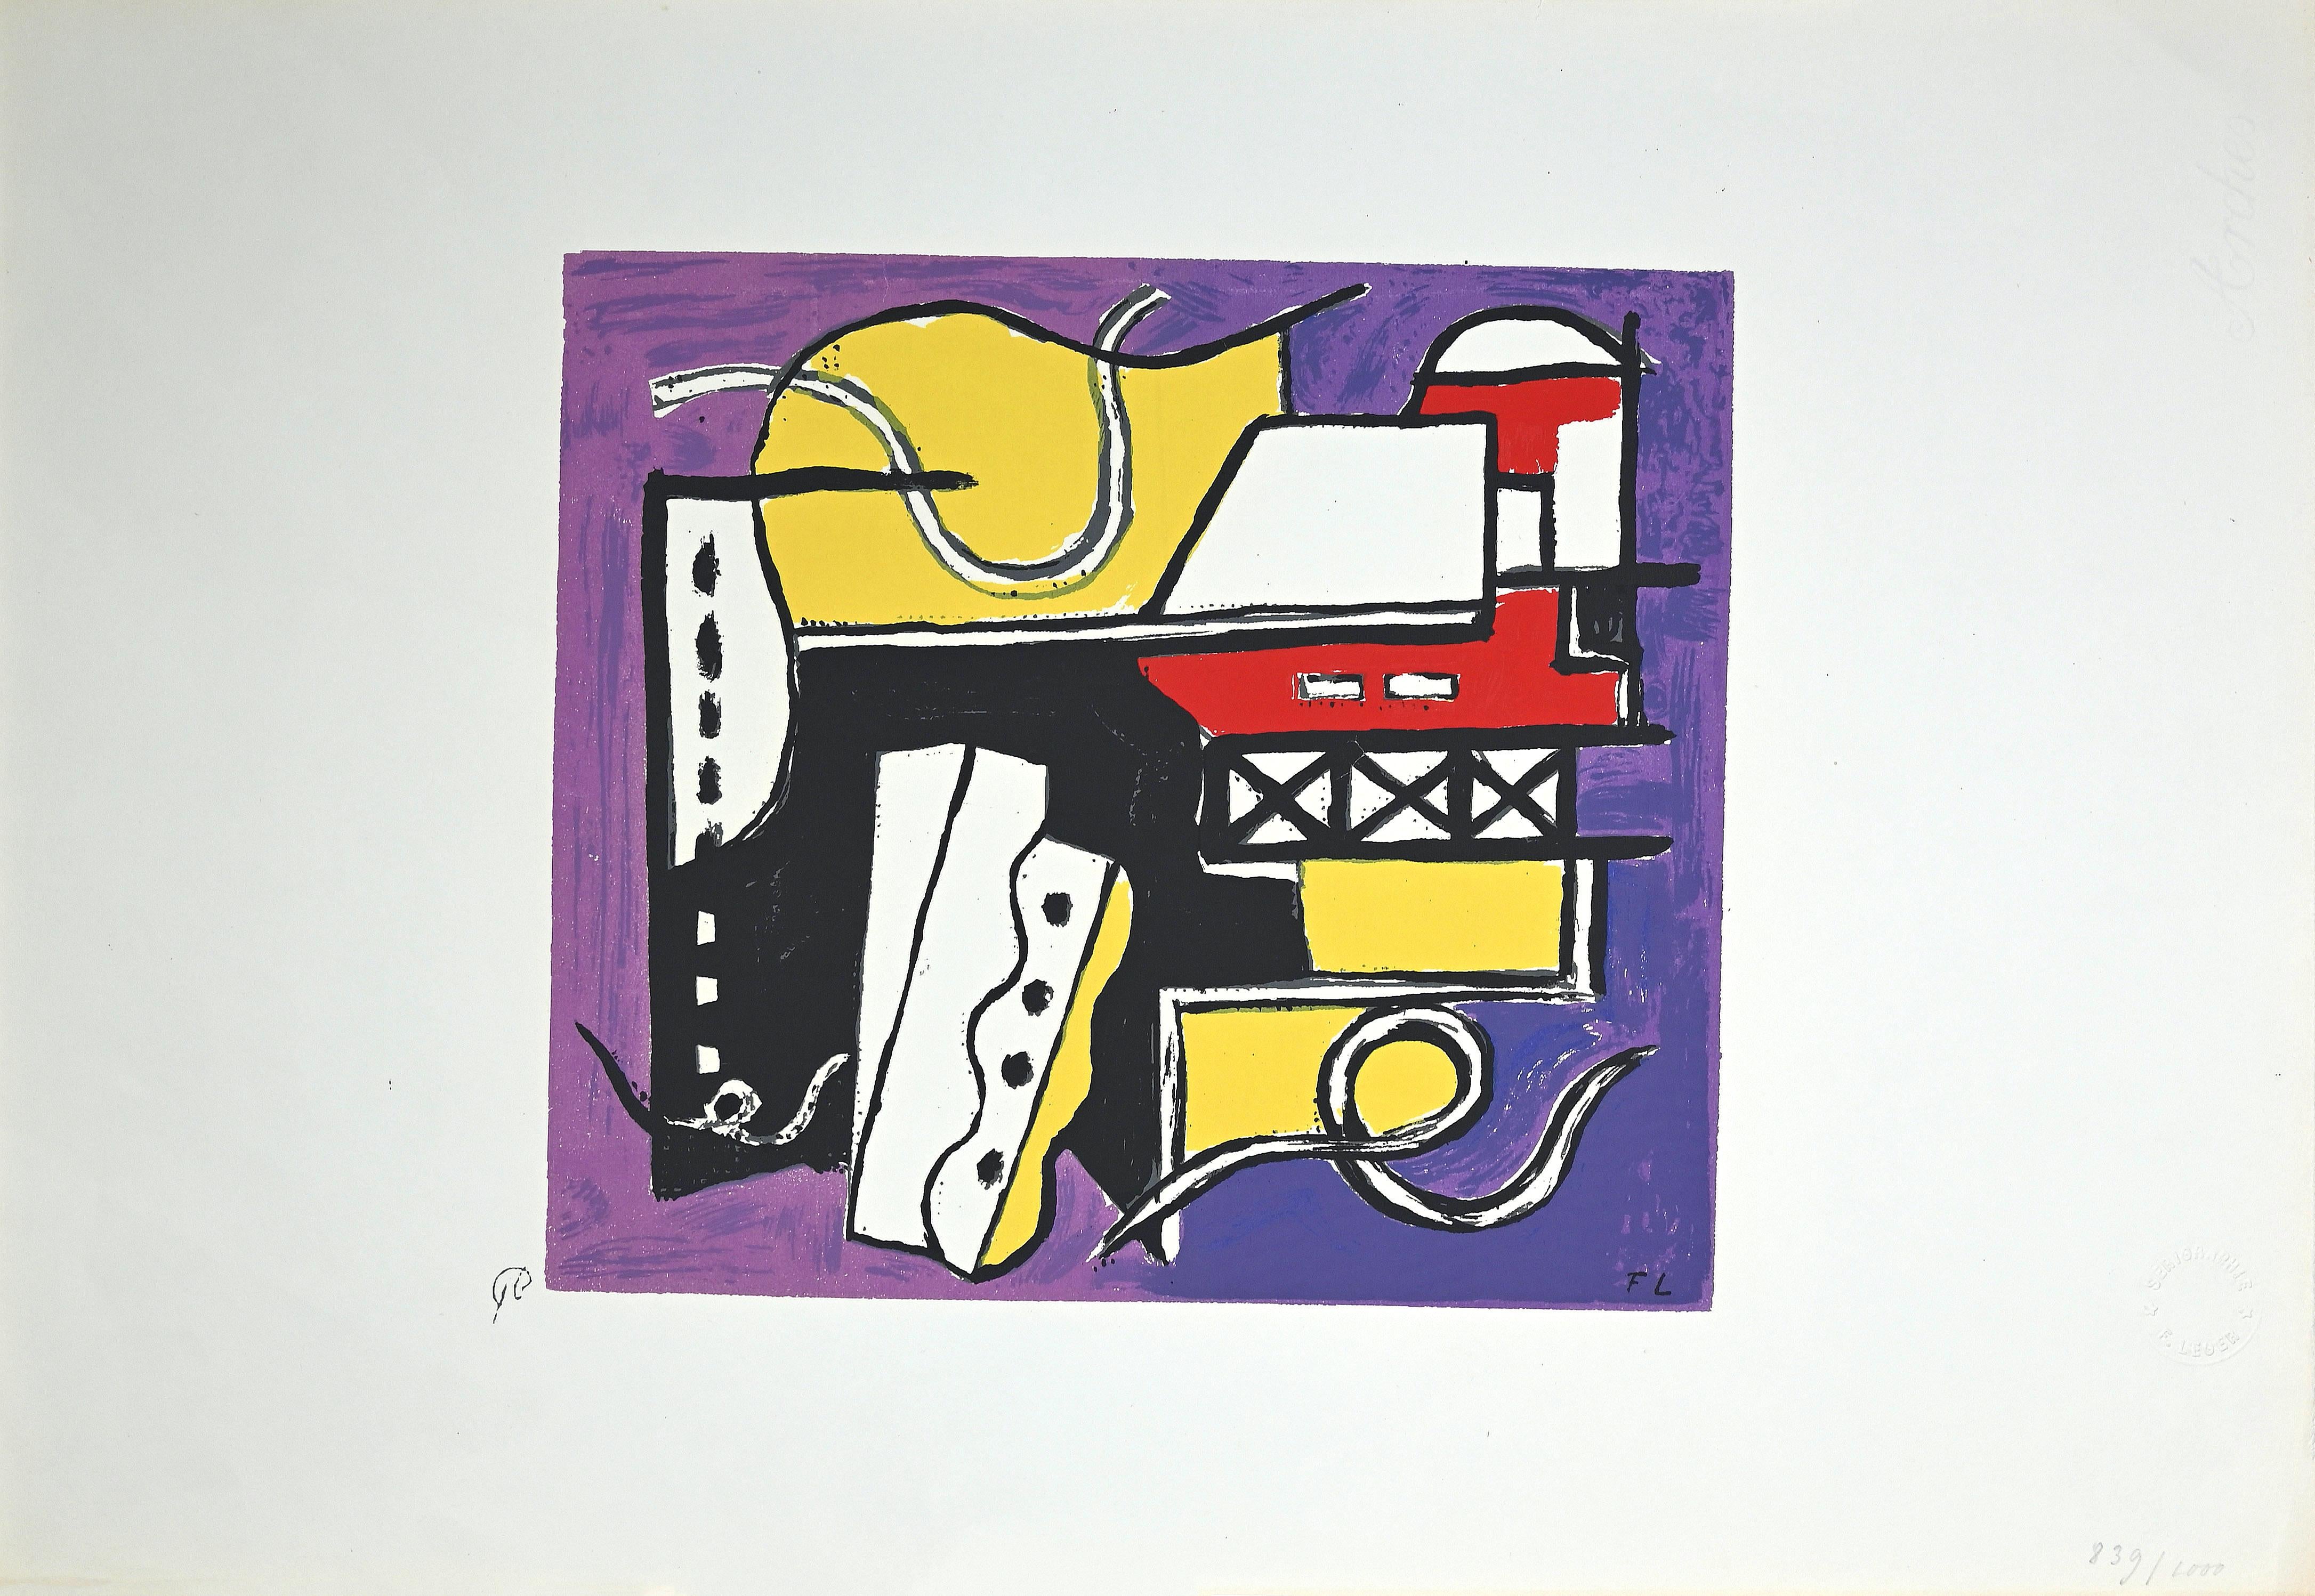 Composition est une sérigraphie réalisée d'après Fernand Léger au milieu du 20e siècle.

Monogrammé dans la plaque et numéroté à la main au crayon en bas à droite.

La composition fait partie d'une collection de 1000 spécimens, signature sèche de